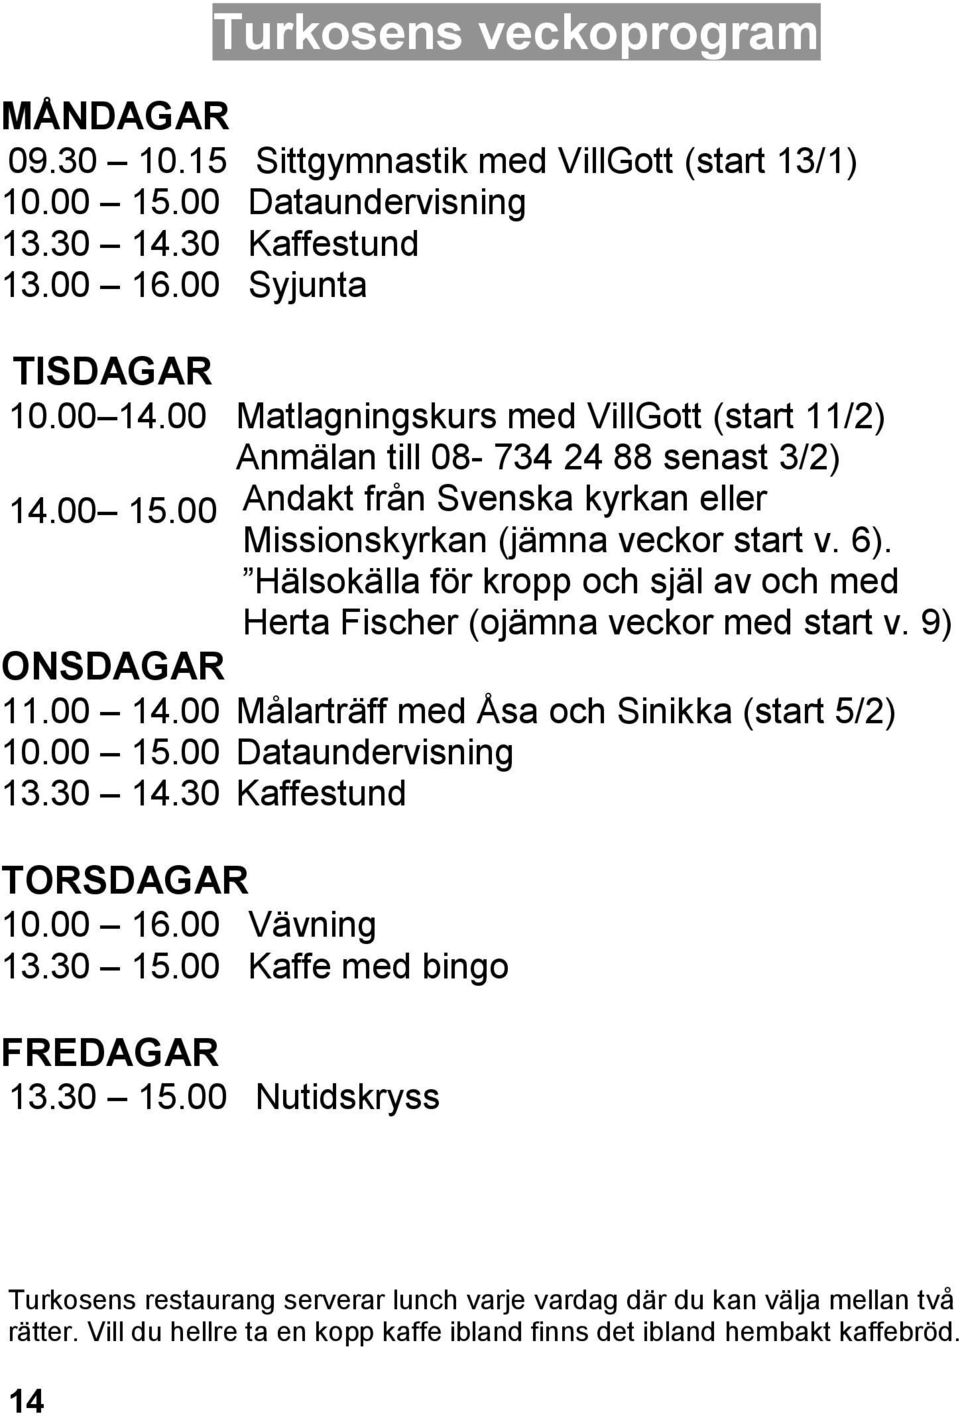 30 Turkosens veckoprogram Sittgymnastik med VillGott (start 13/1) Dataundervisning Kaffestund Syjunta Matlagningskurs med VillGott (start 11/2) Anmälan till 08-734 24 88 senast 3/2) Andakt från